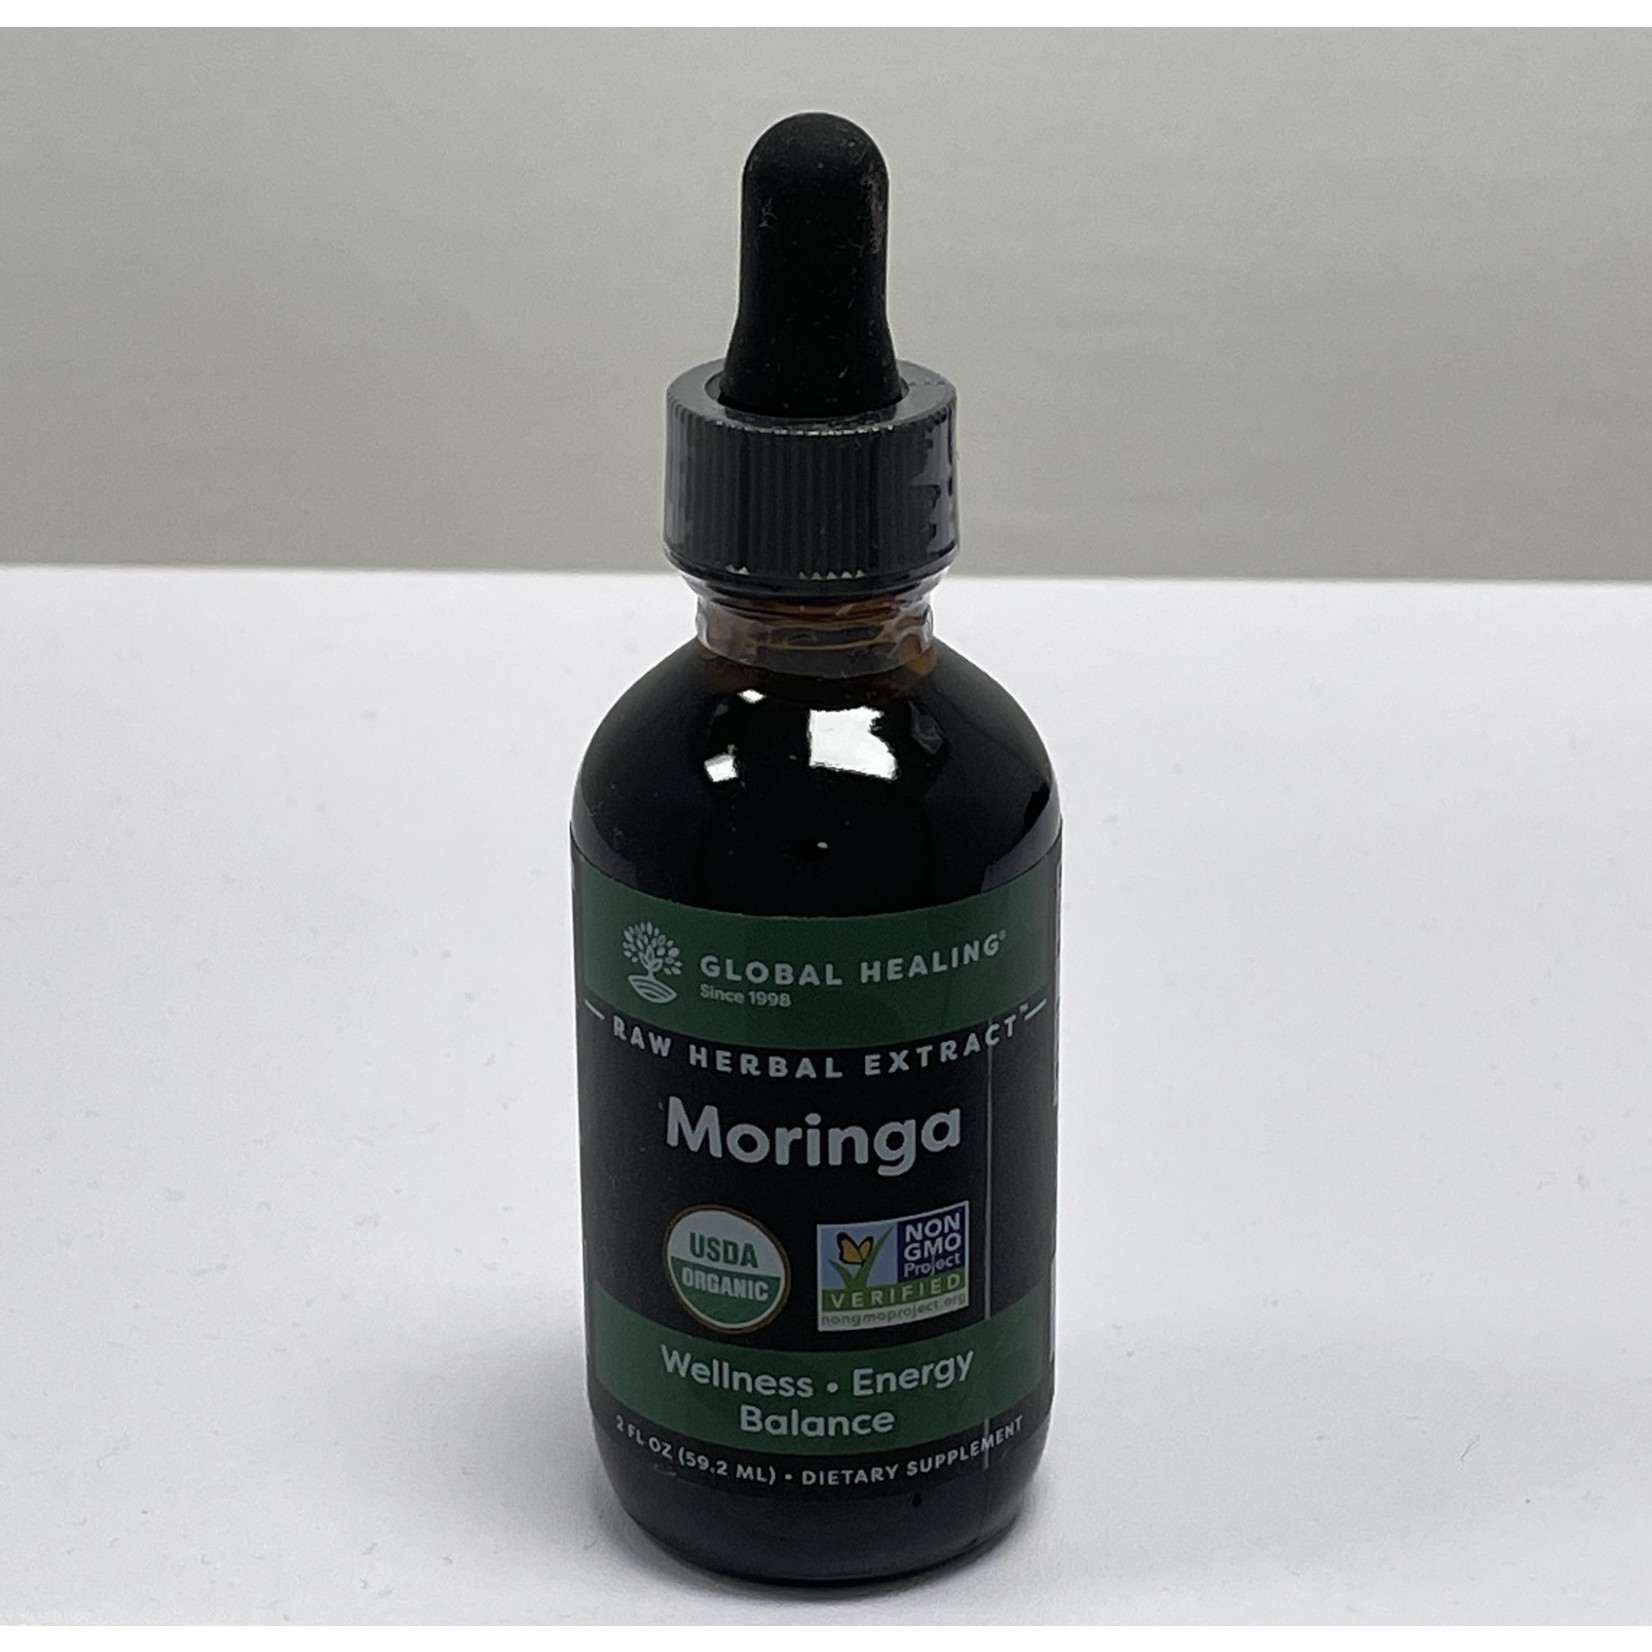 Global Healing Global Healing Moringa Liquid Extract 2oz